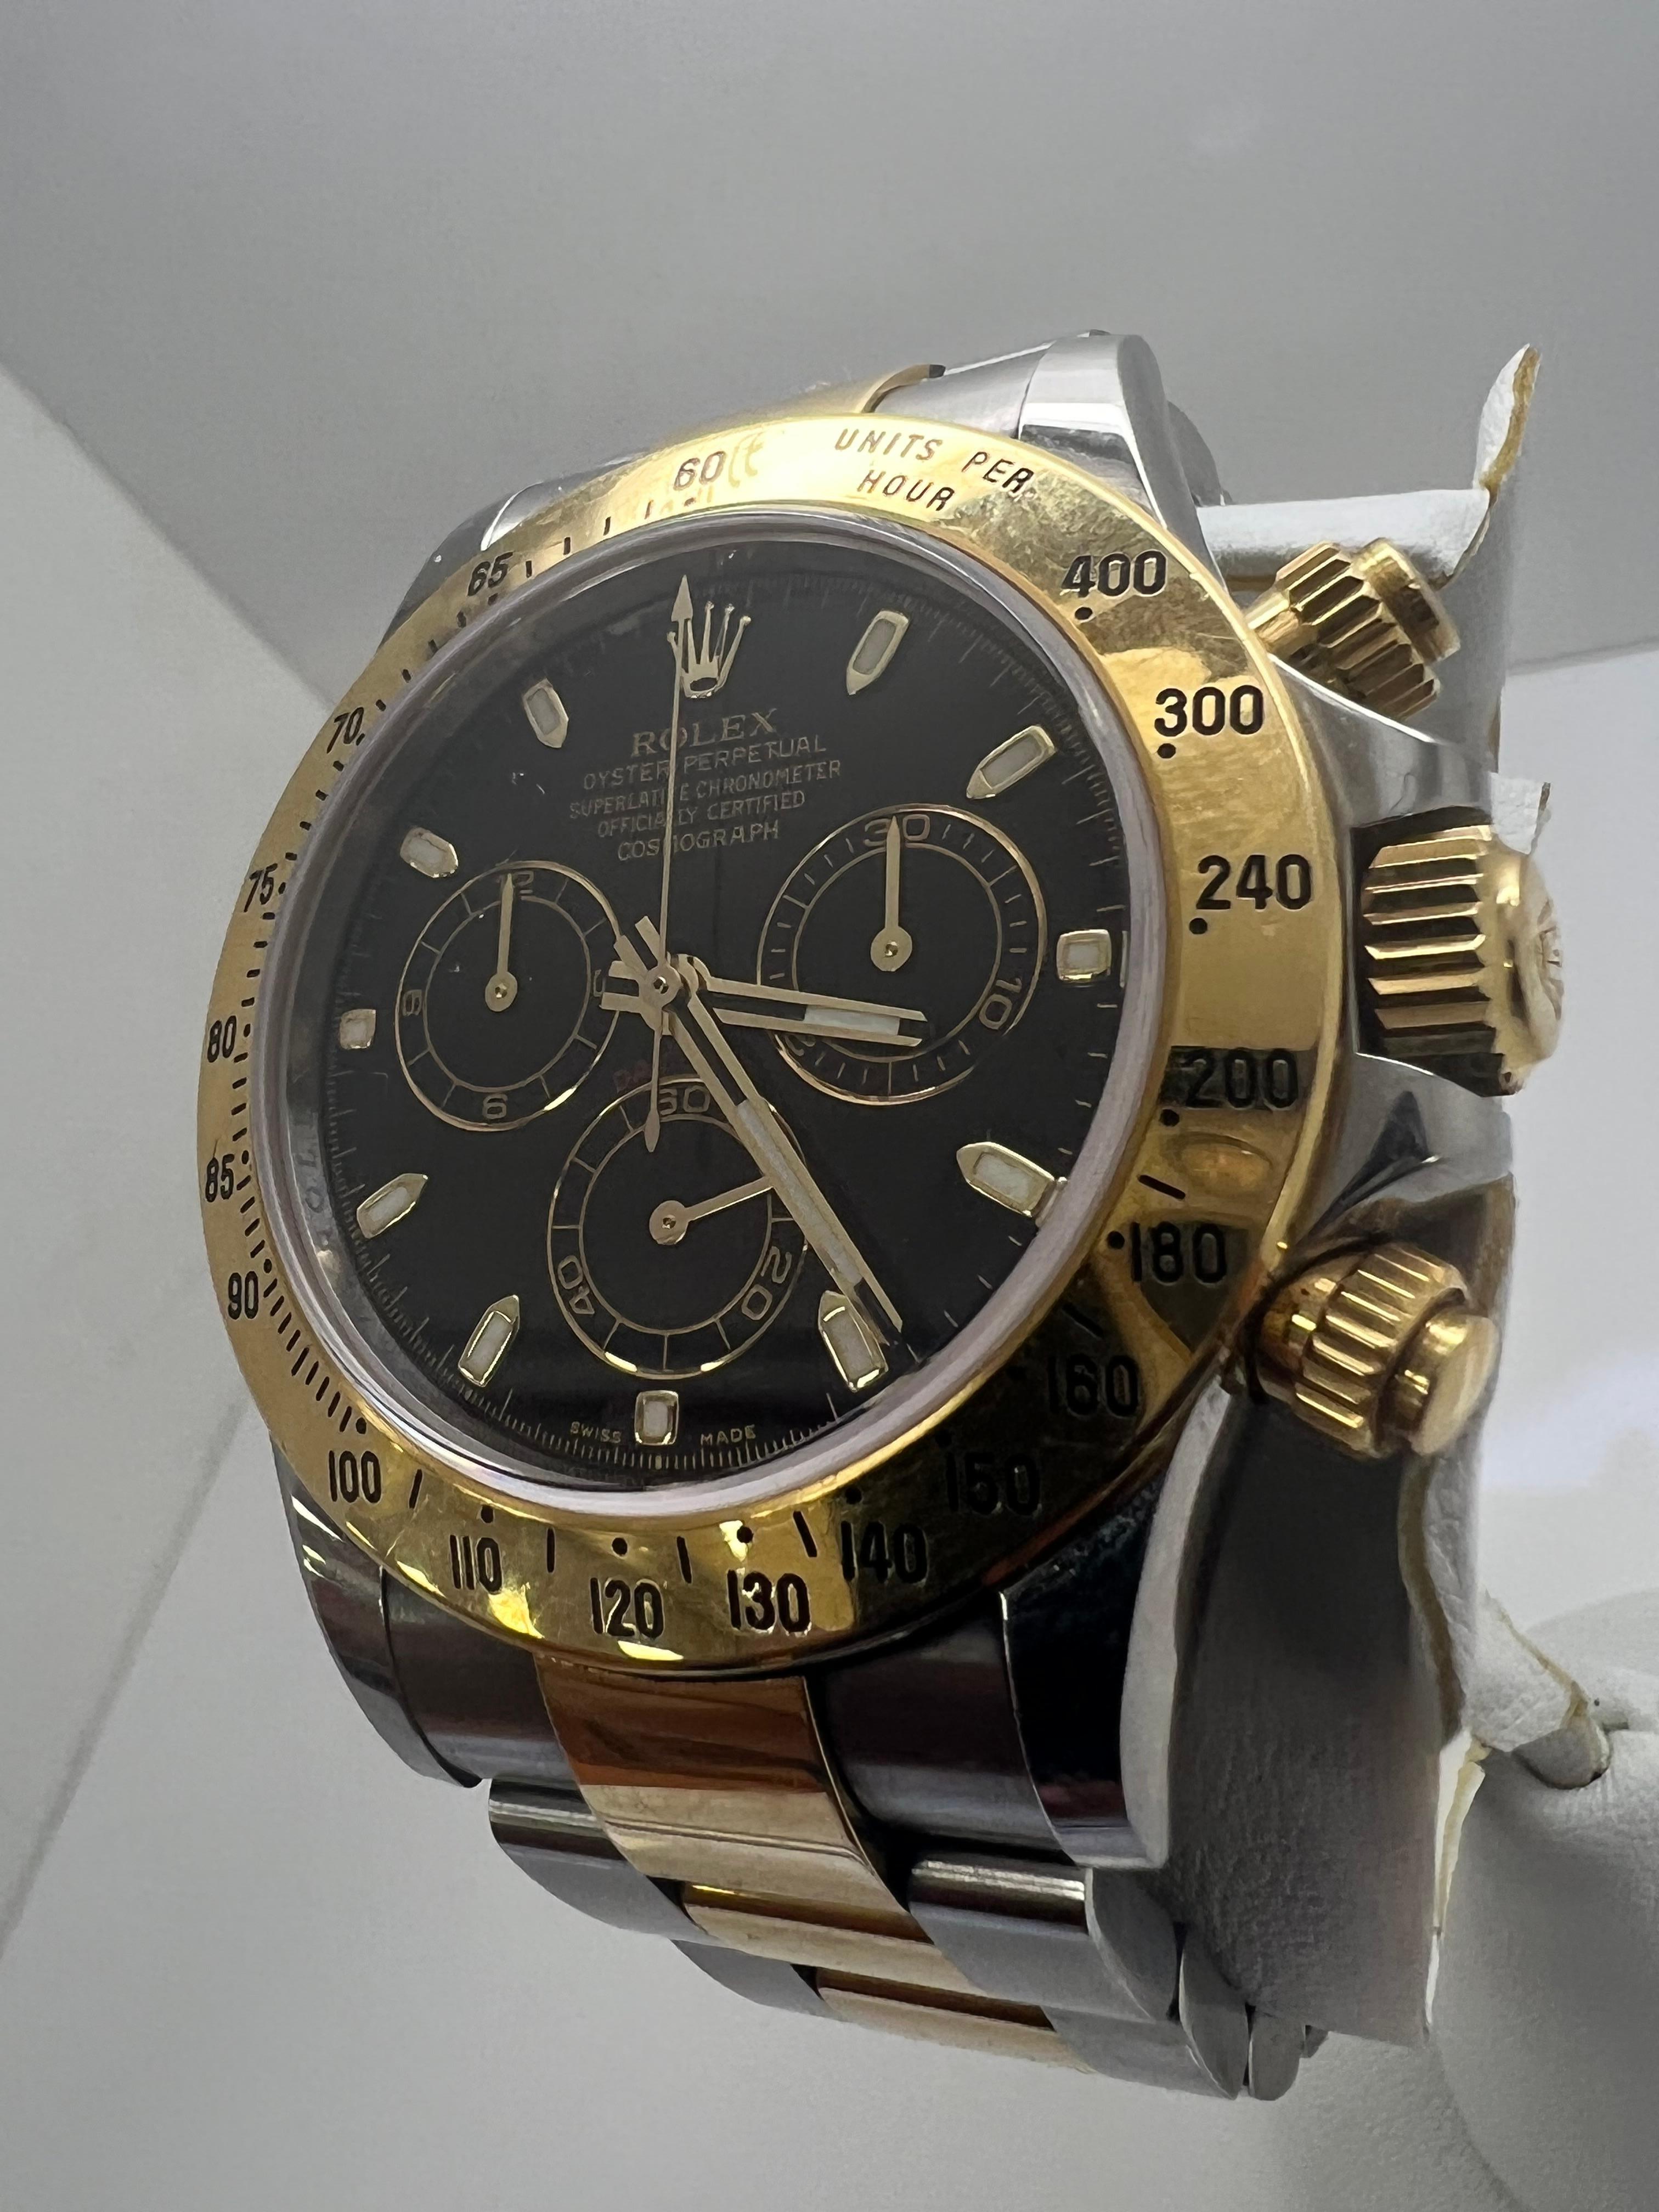 Rolex Daytona 2 Tone Schwarzes Zifferblatt Herrenuhr

hervorragender Zustand

Diese Uhr ist 100% original Rolex

Original Rolex Box & Broschüren 

Einkaufen mit Zuversicht 

5 Jahre Garantie
